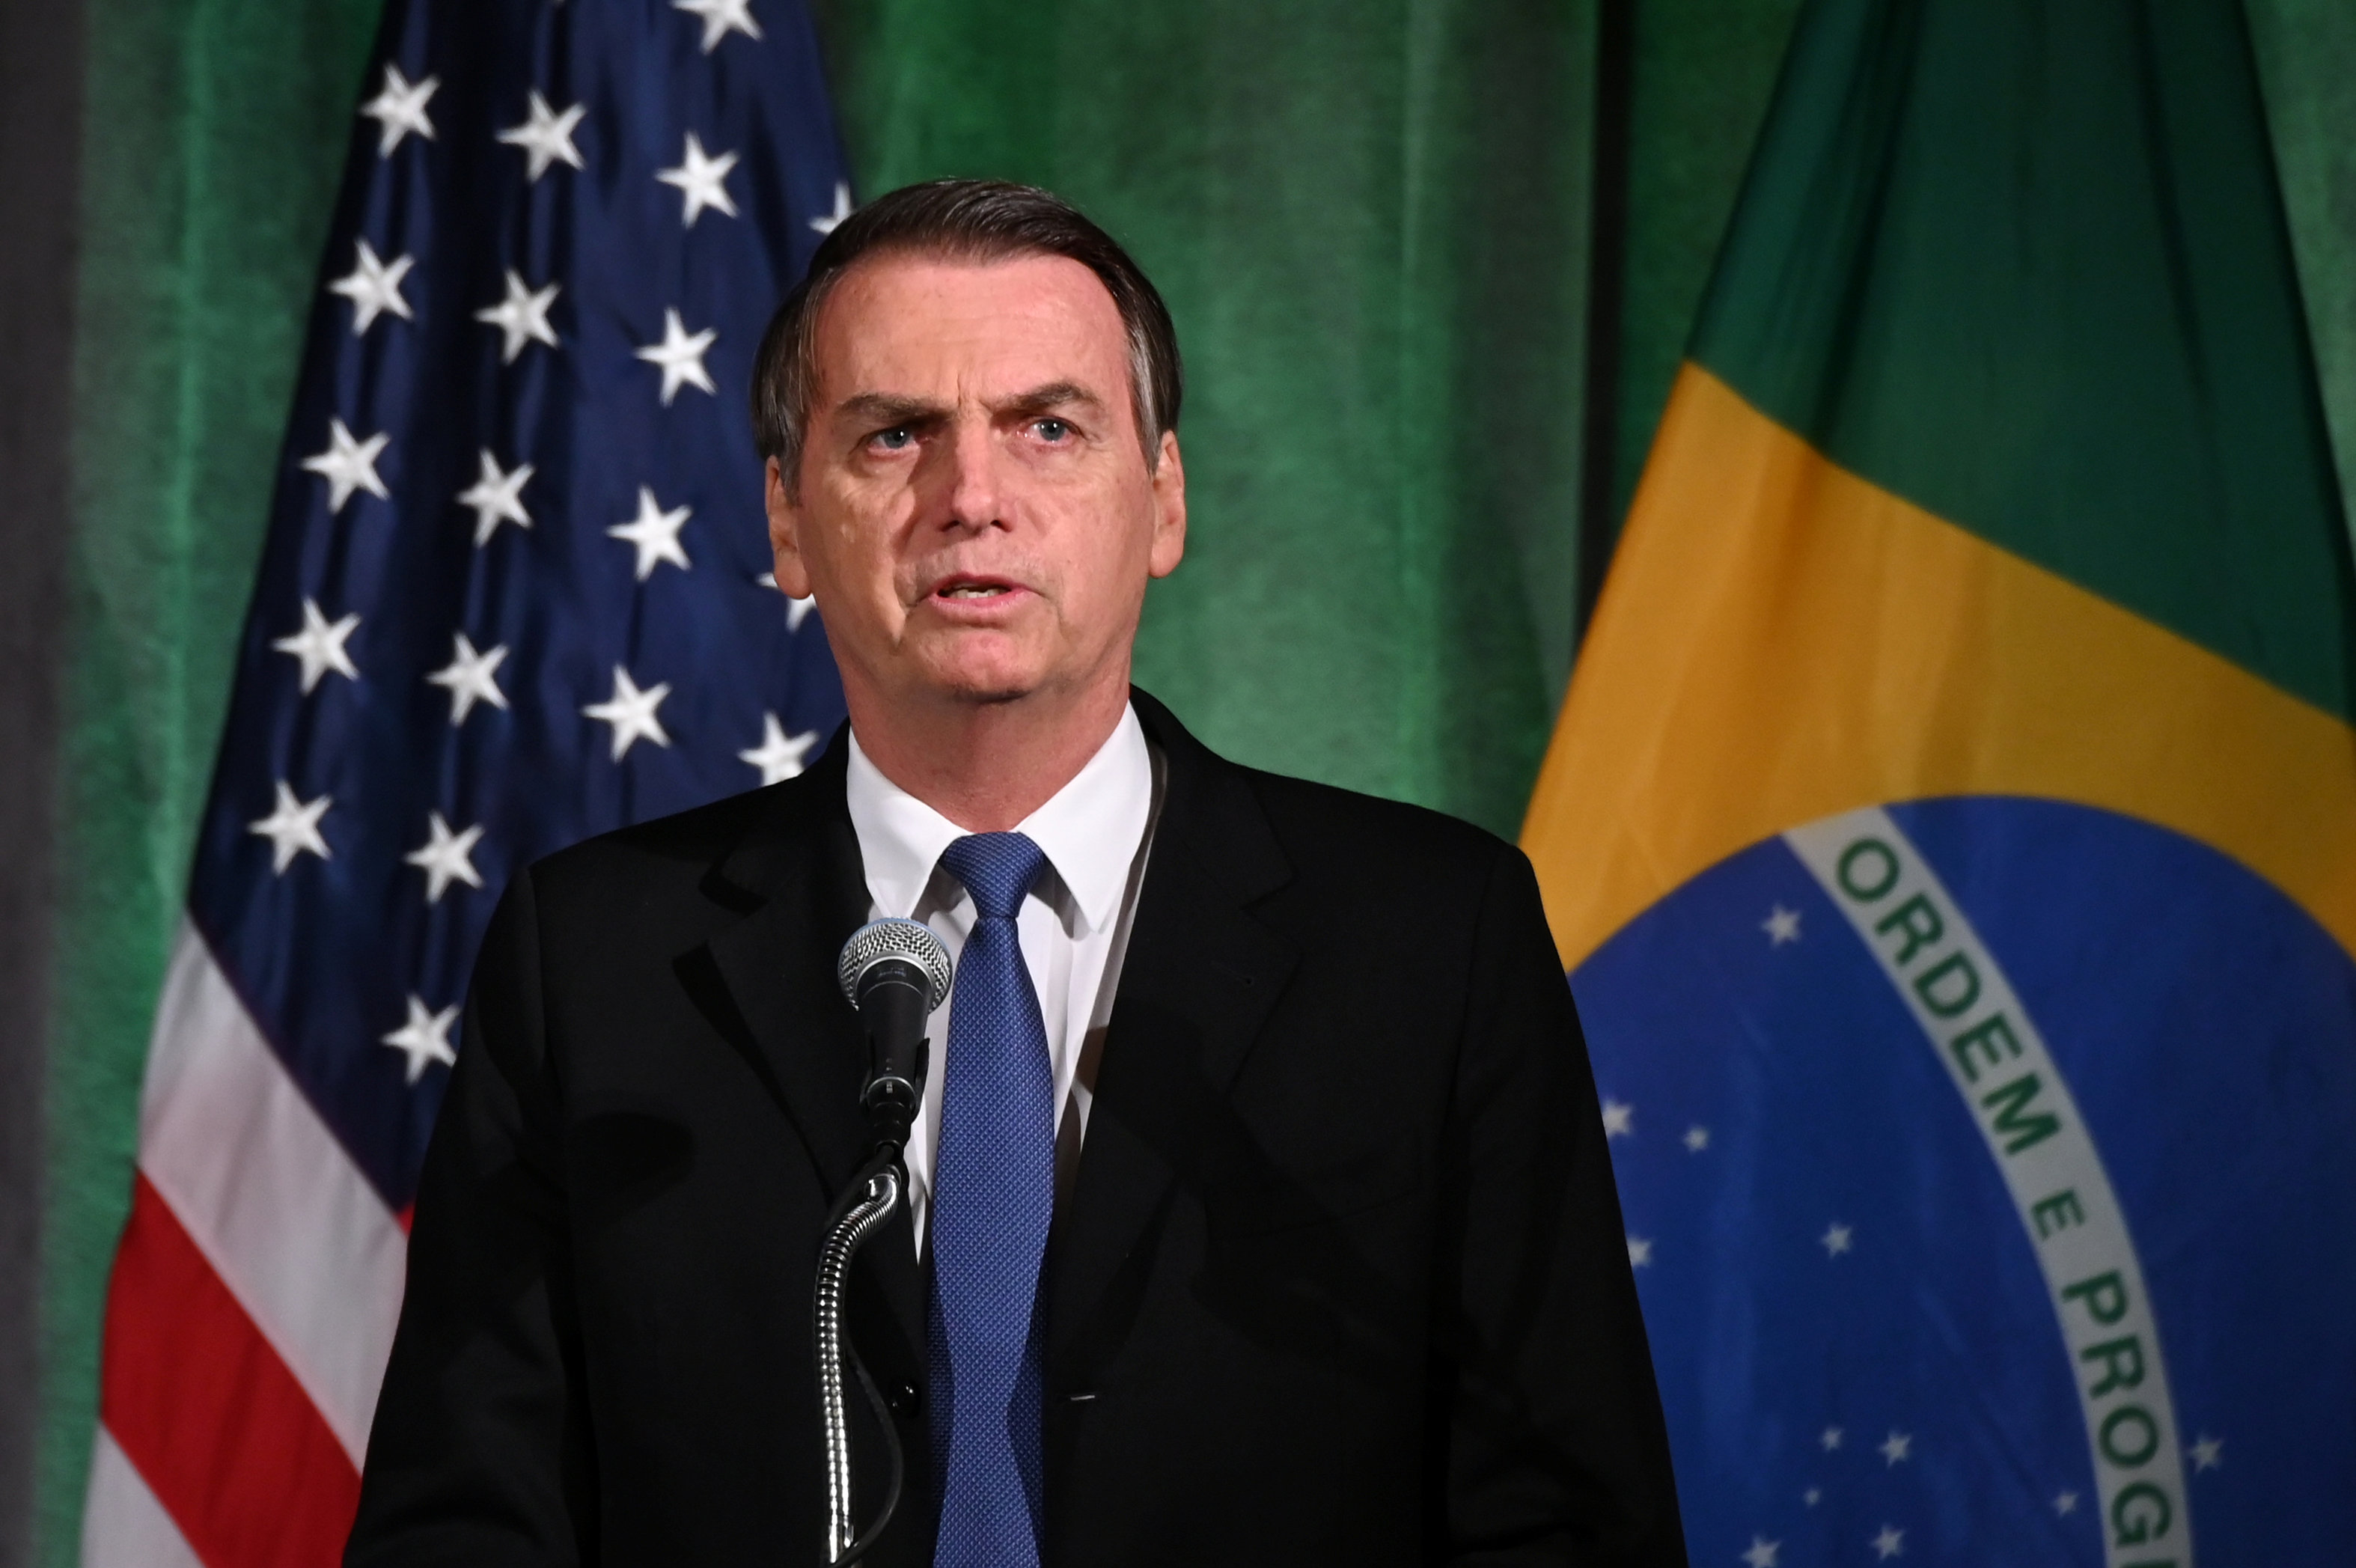 Bolsonaro decidido a llamar a Trump para abogar contra nuevos aranceles